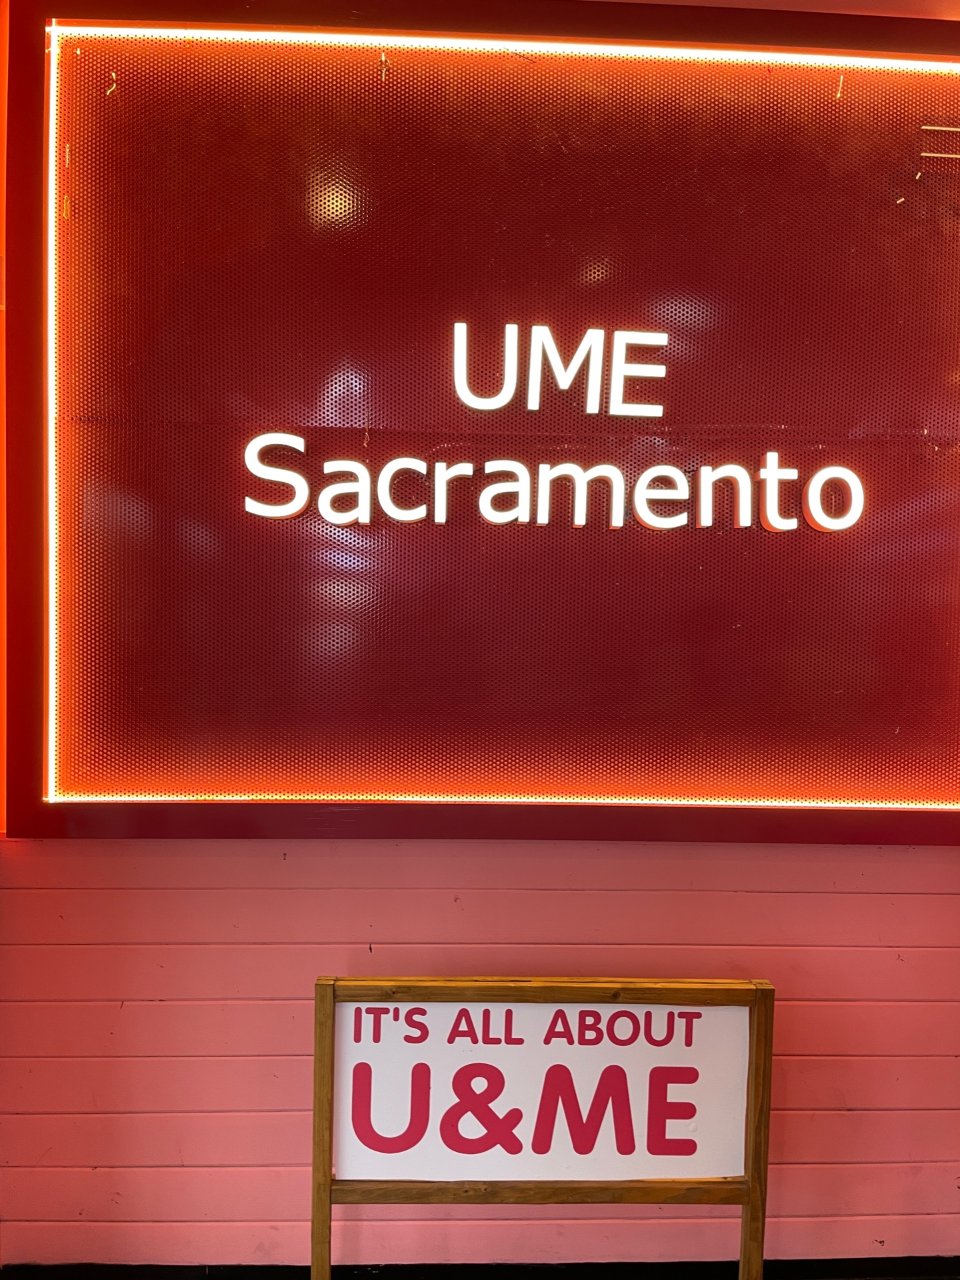 Sacramento 优米奶茶UME...